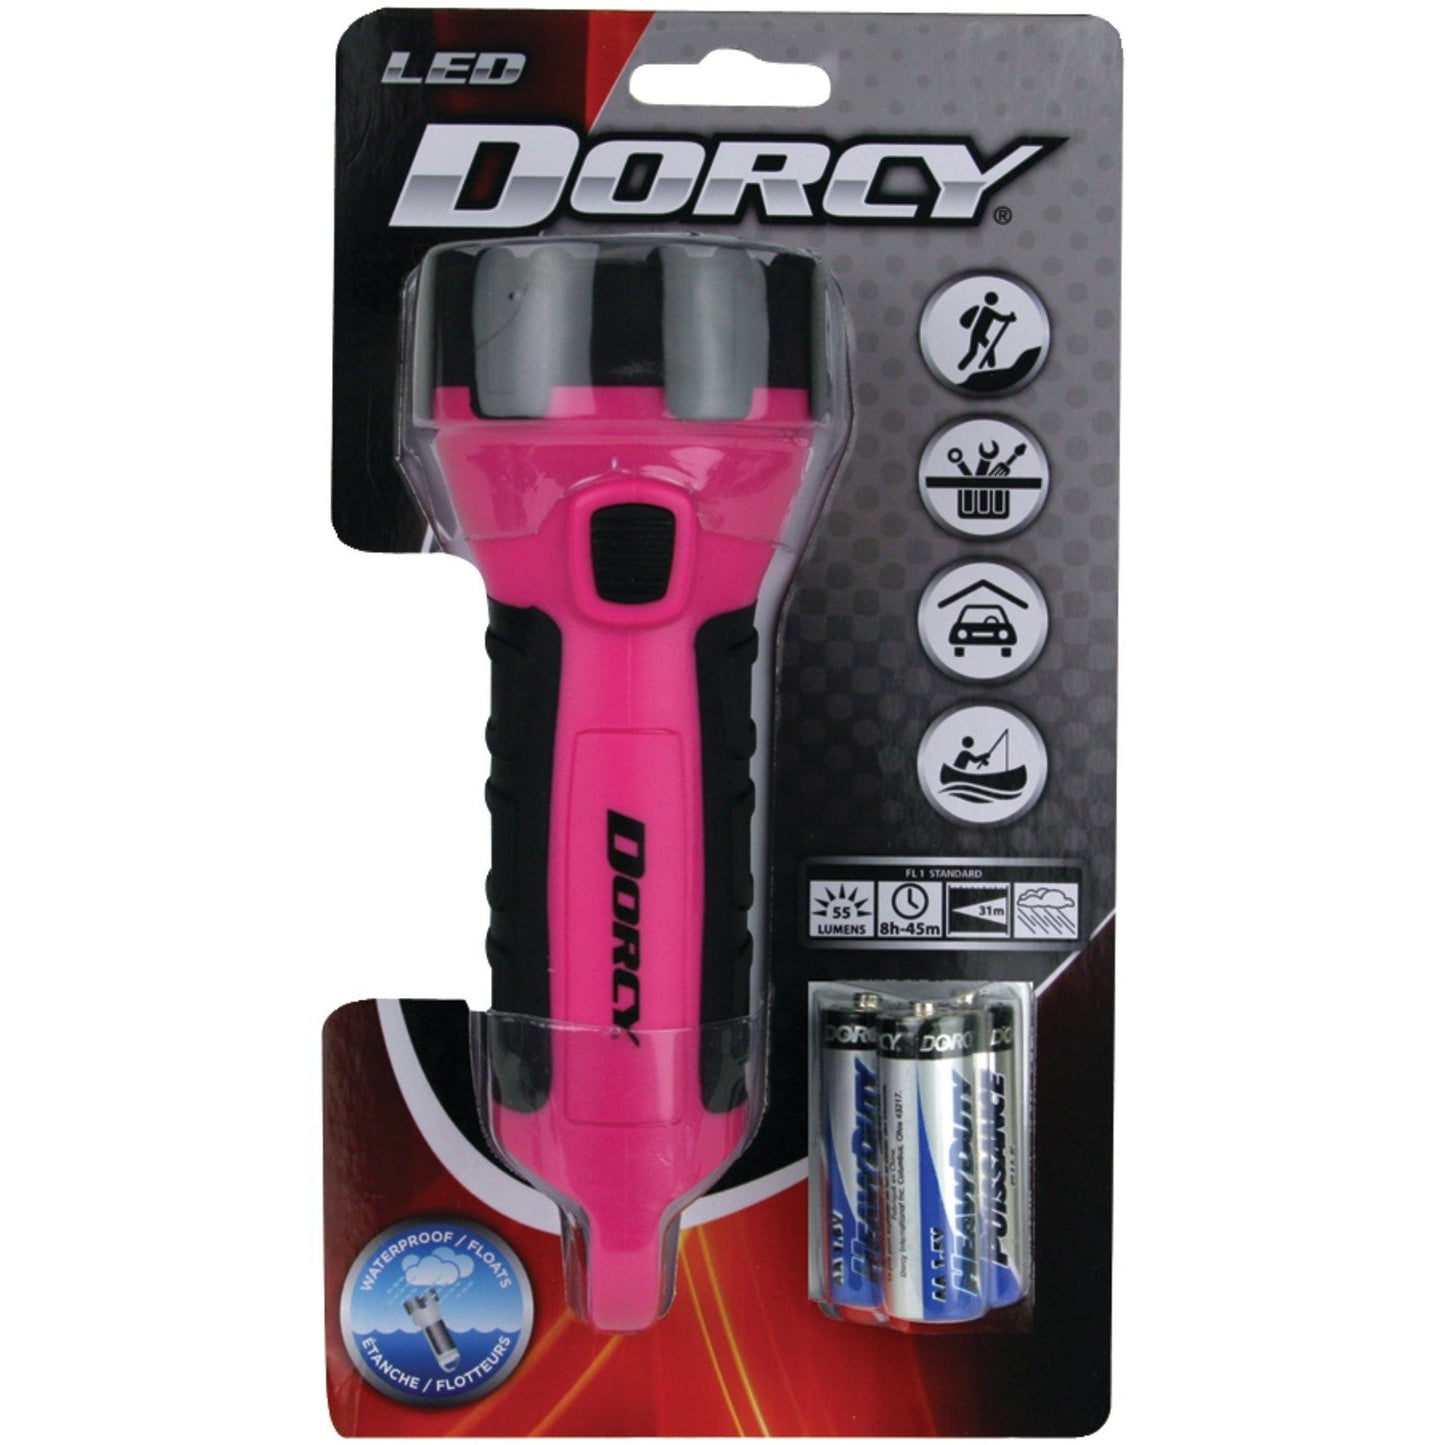 1) DORCY 41-2511 4 LED Floating Flashlight Random Case Color Blue/Green/Pink or Purple